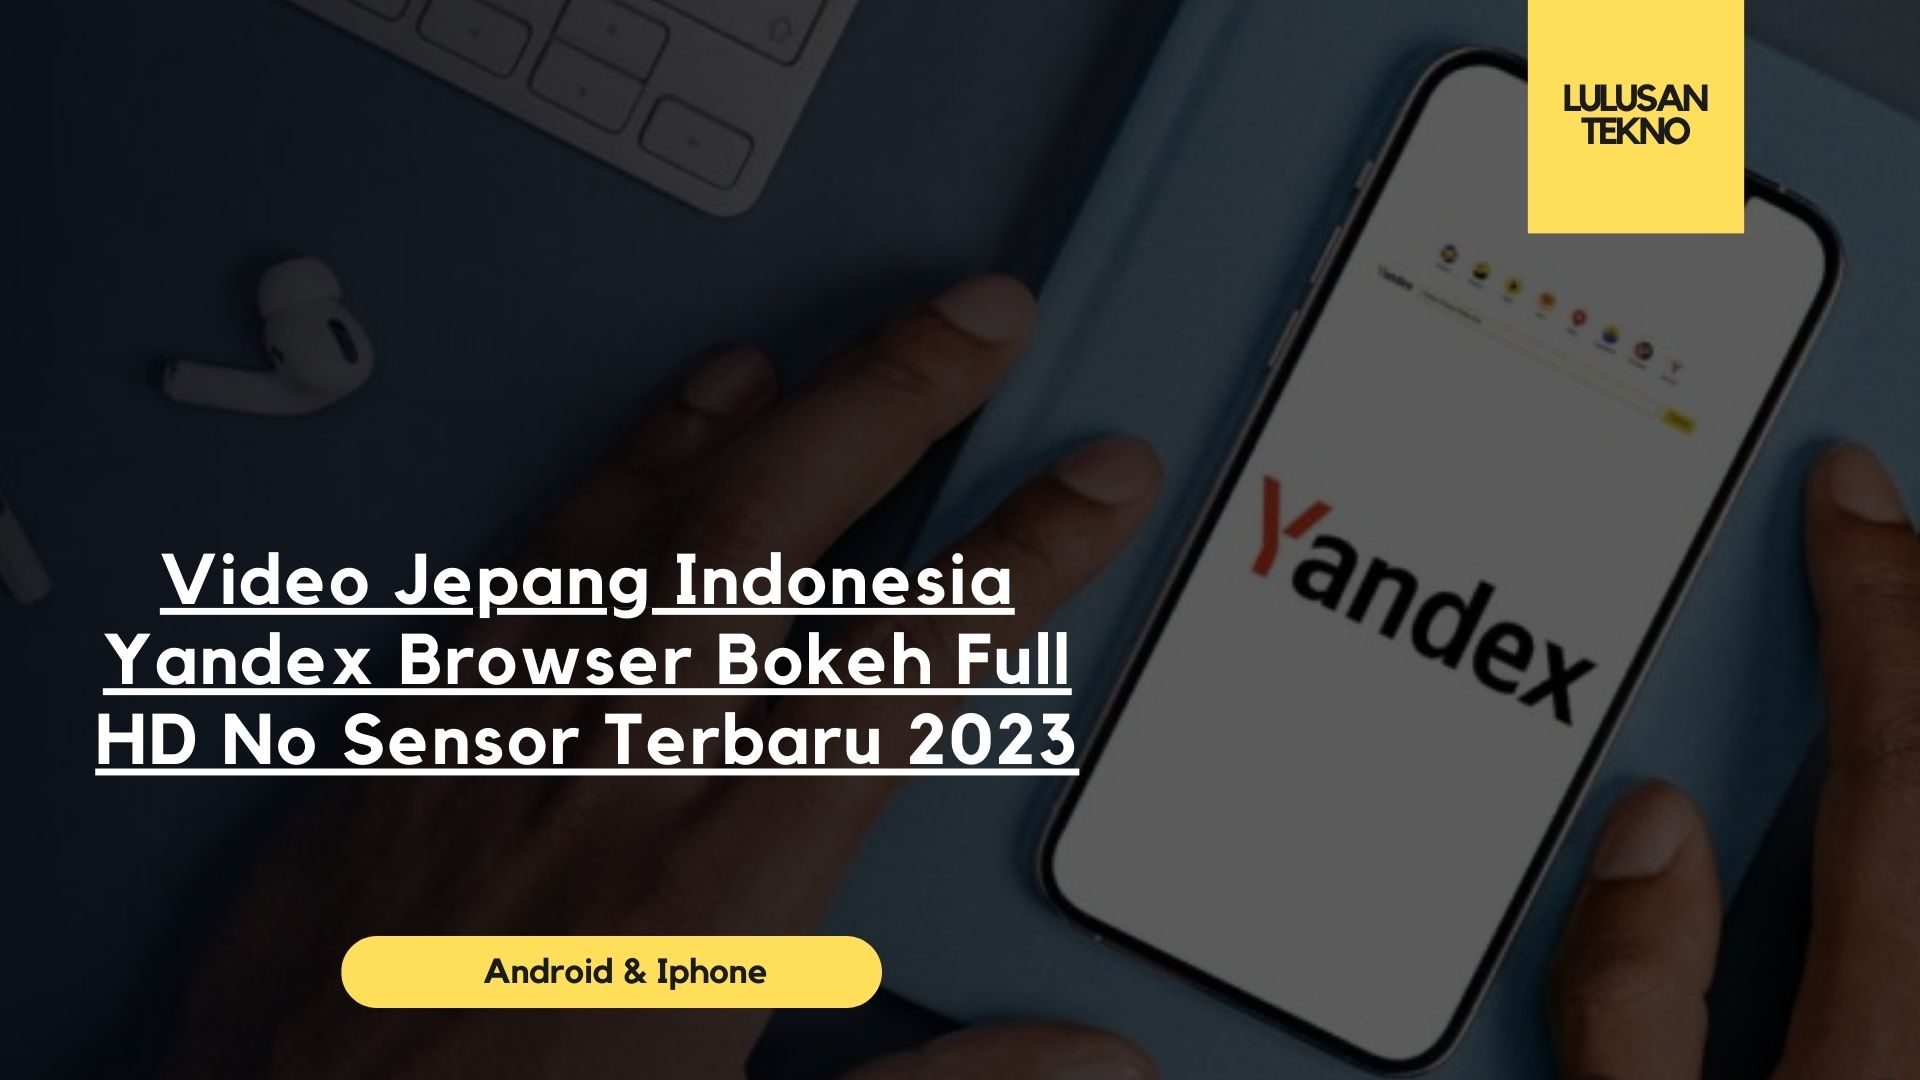 Video Jepang Indonesia Yandex Browser Bokeh Full HD No Sensor Terbaru 2023